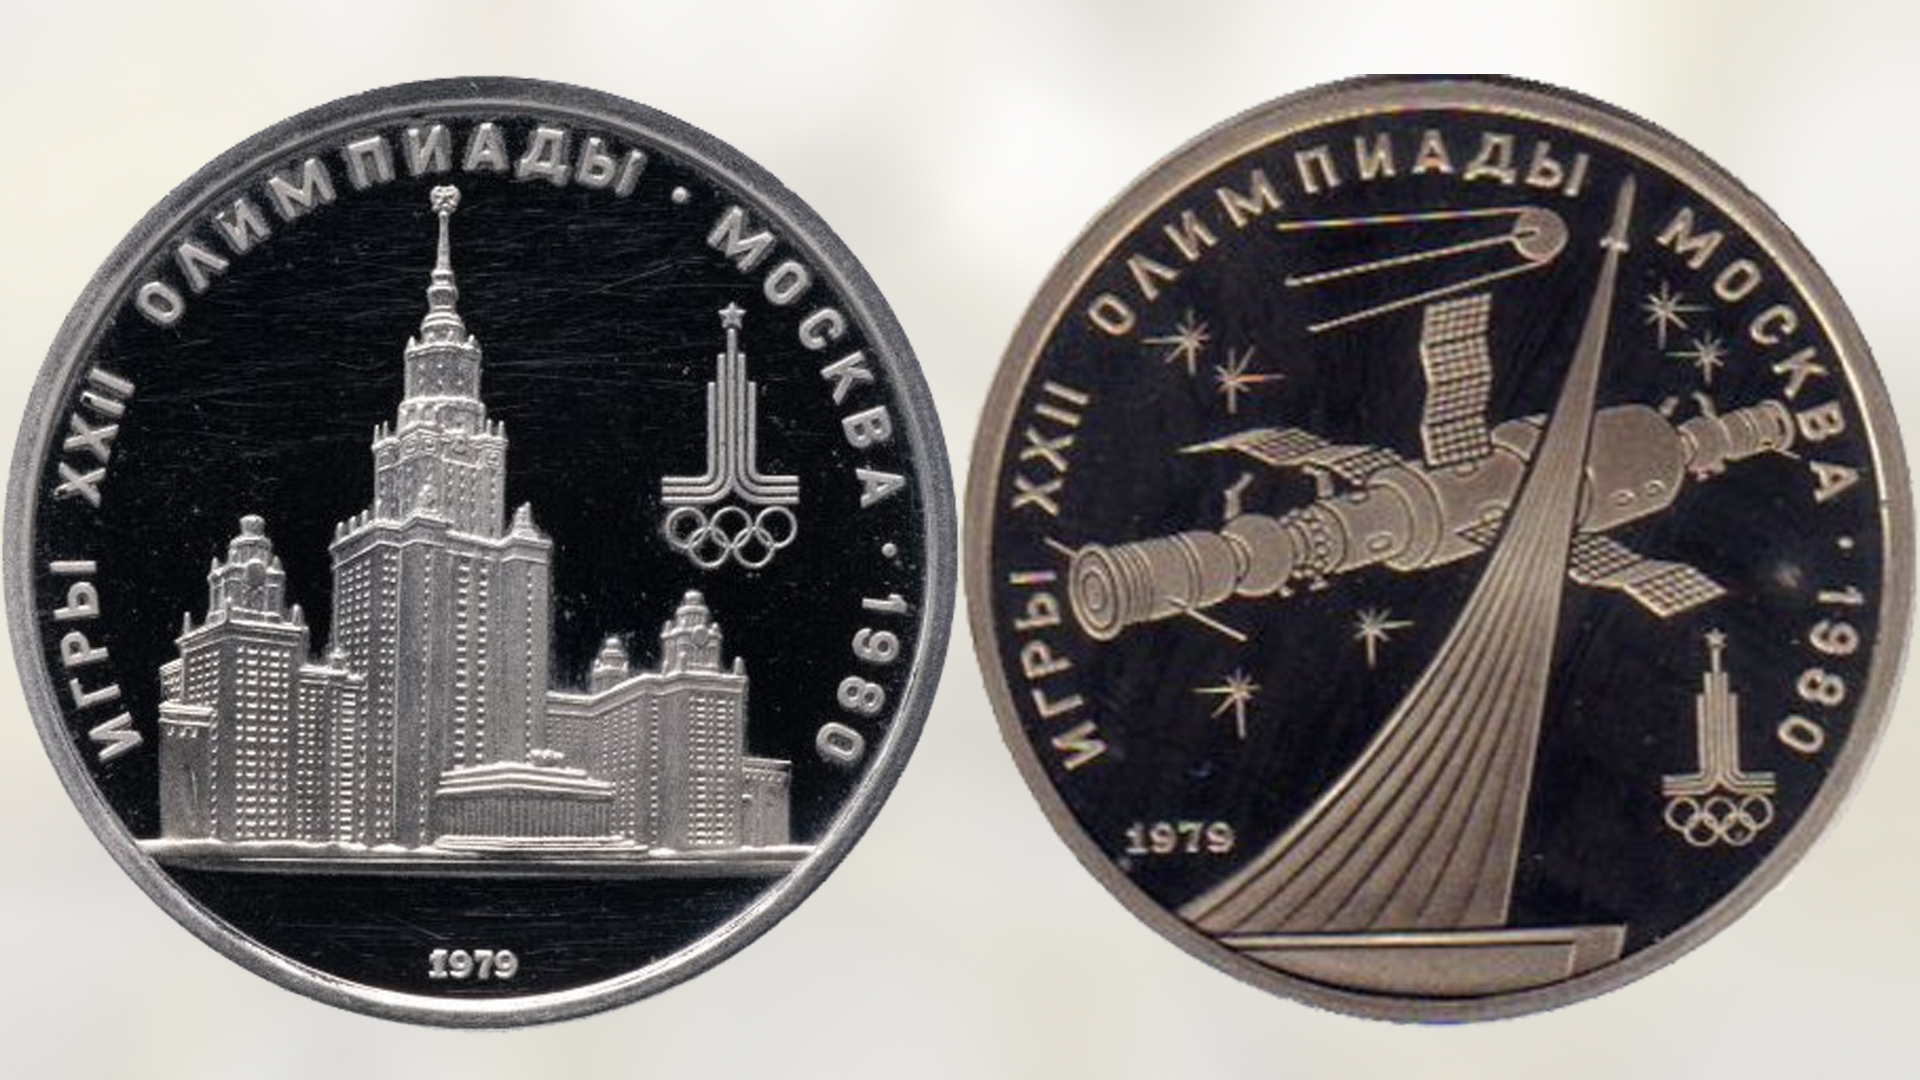 Памятные монеты СССР из не драгоценных металлов выпуска 1979 года.